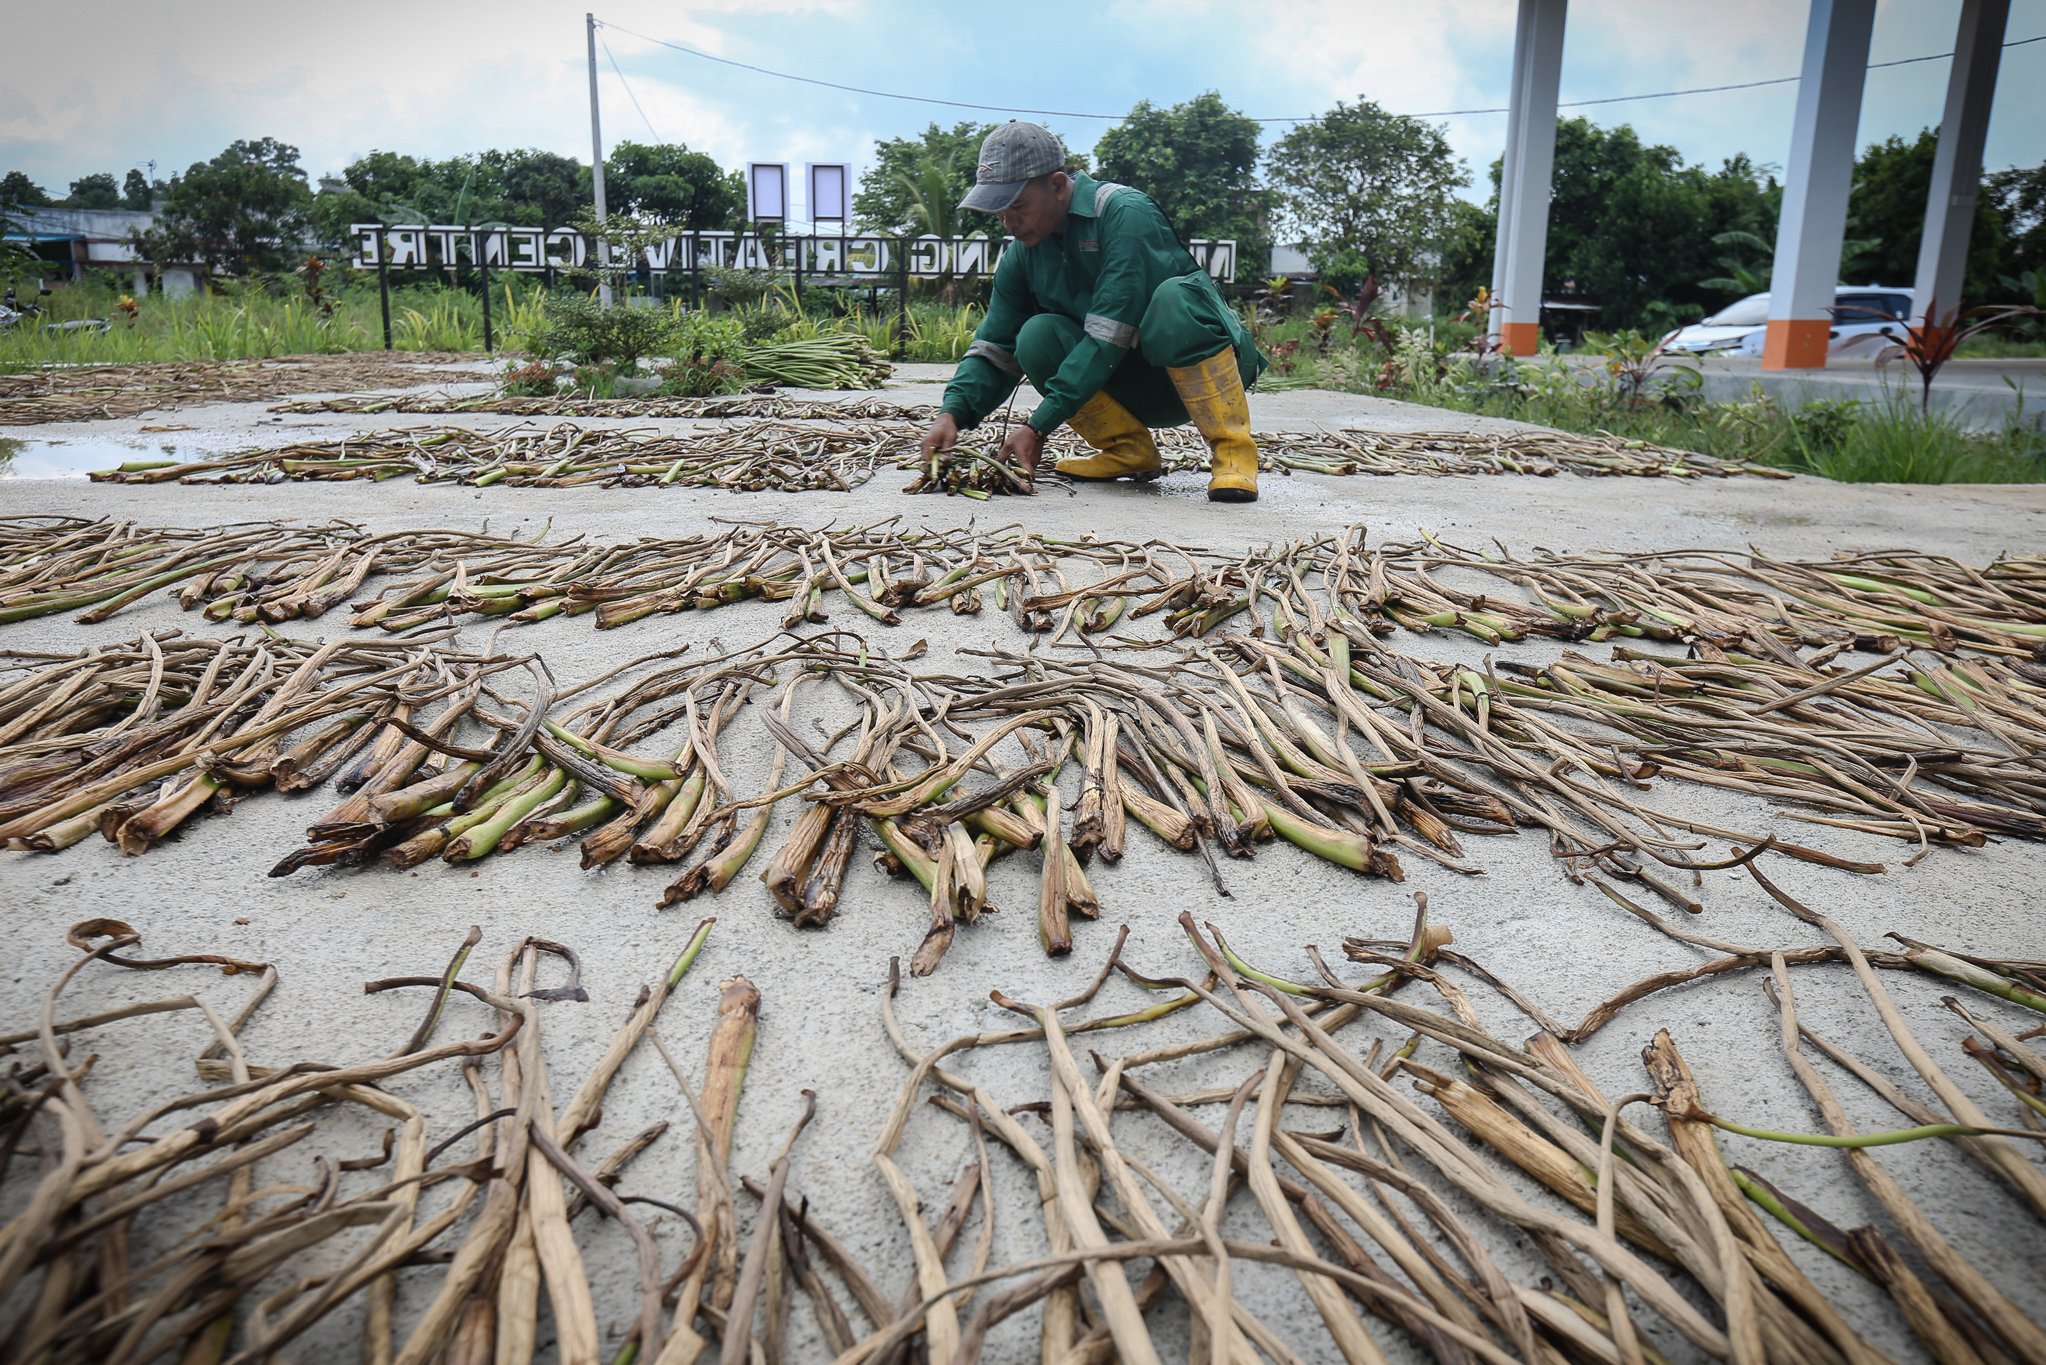 Pekerja menjemur tanaman eceng gondok yang dijadikan bahan dasar kerajinan di Isna Puring, Batam, Kepulauan Riau.